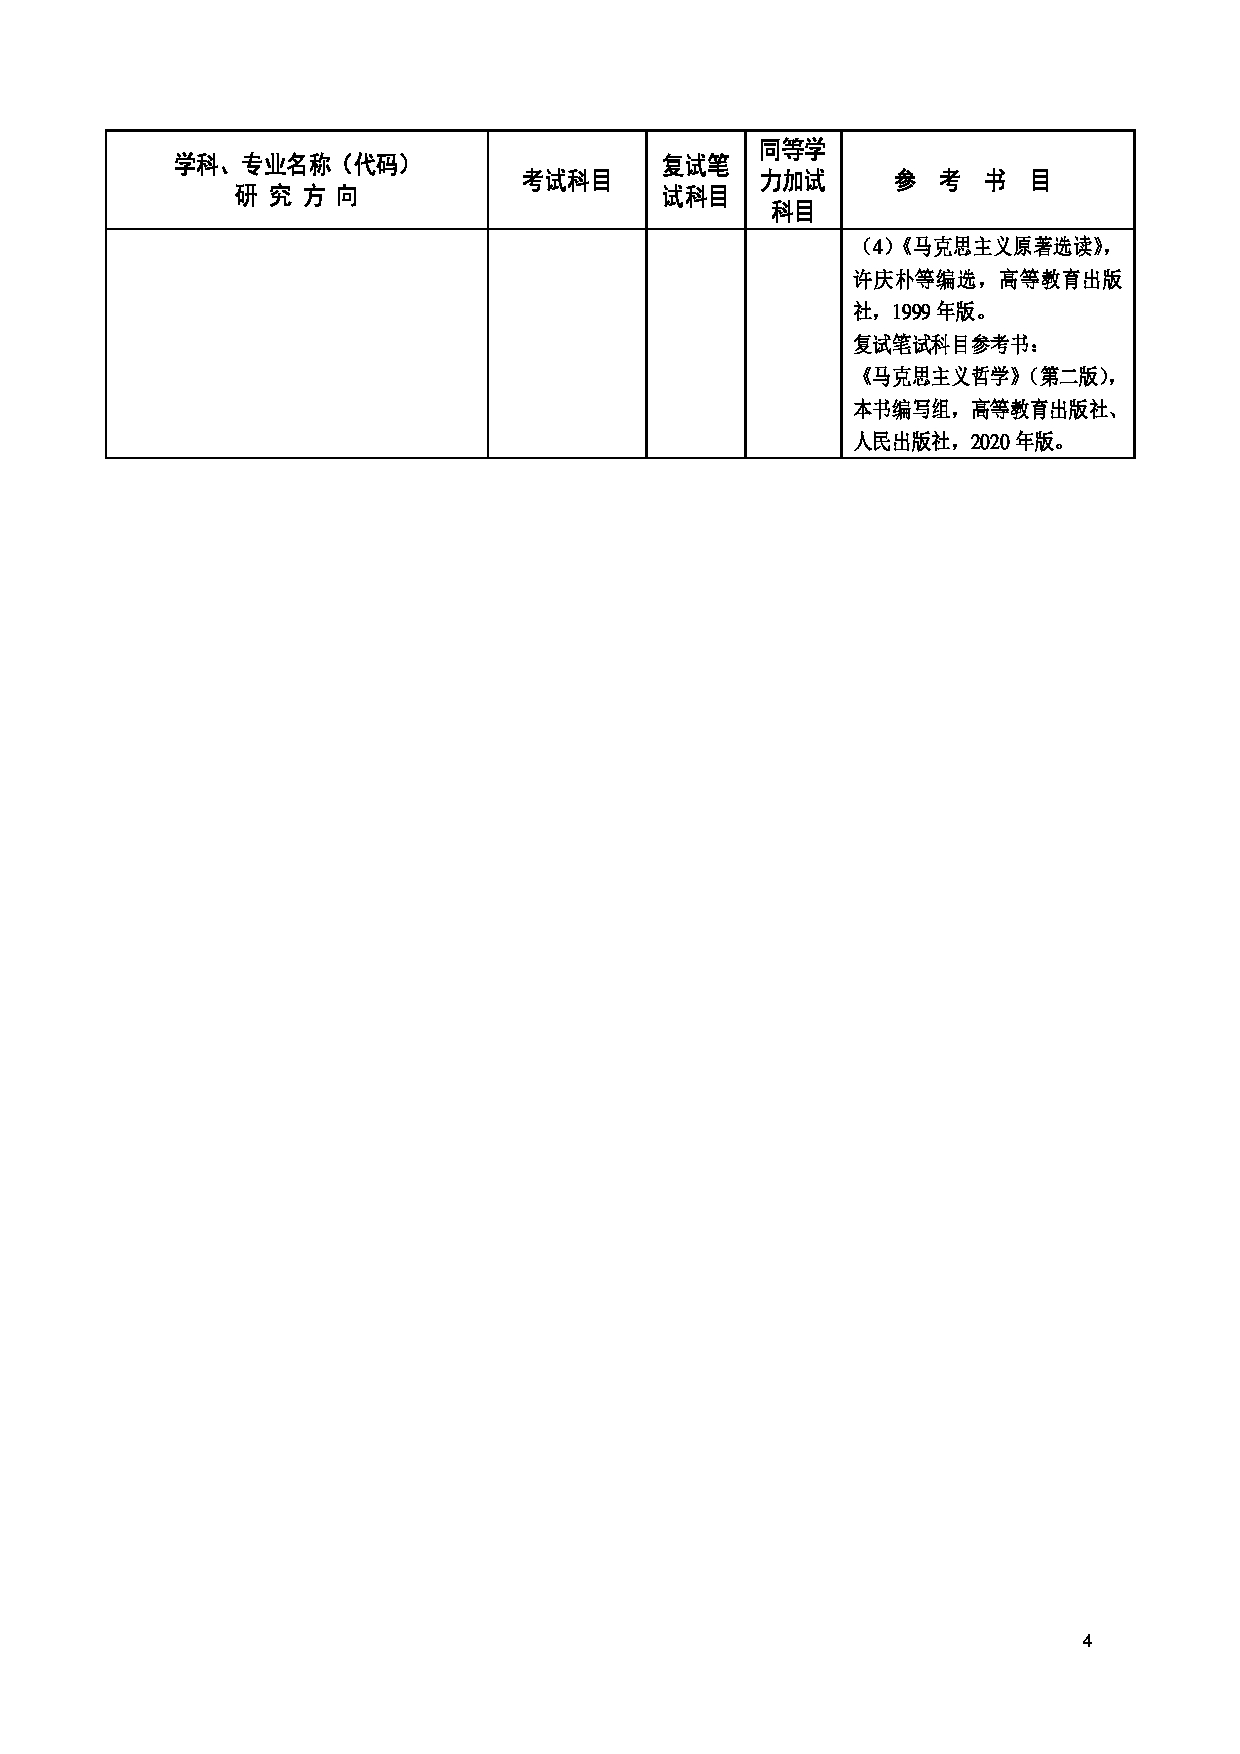 2023招生目录：广州大学2023年  3马克思主义学院 研究生考试招生目录第4页